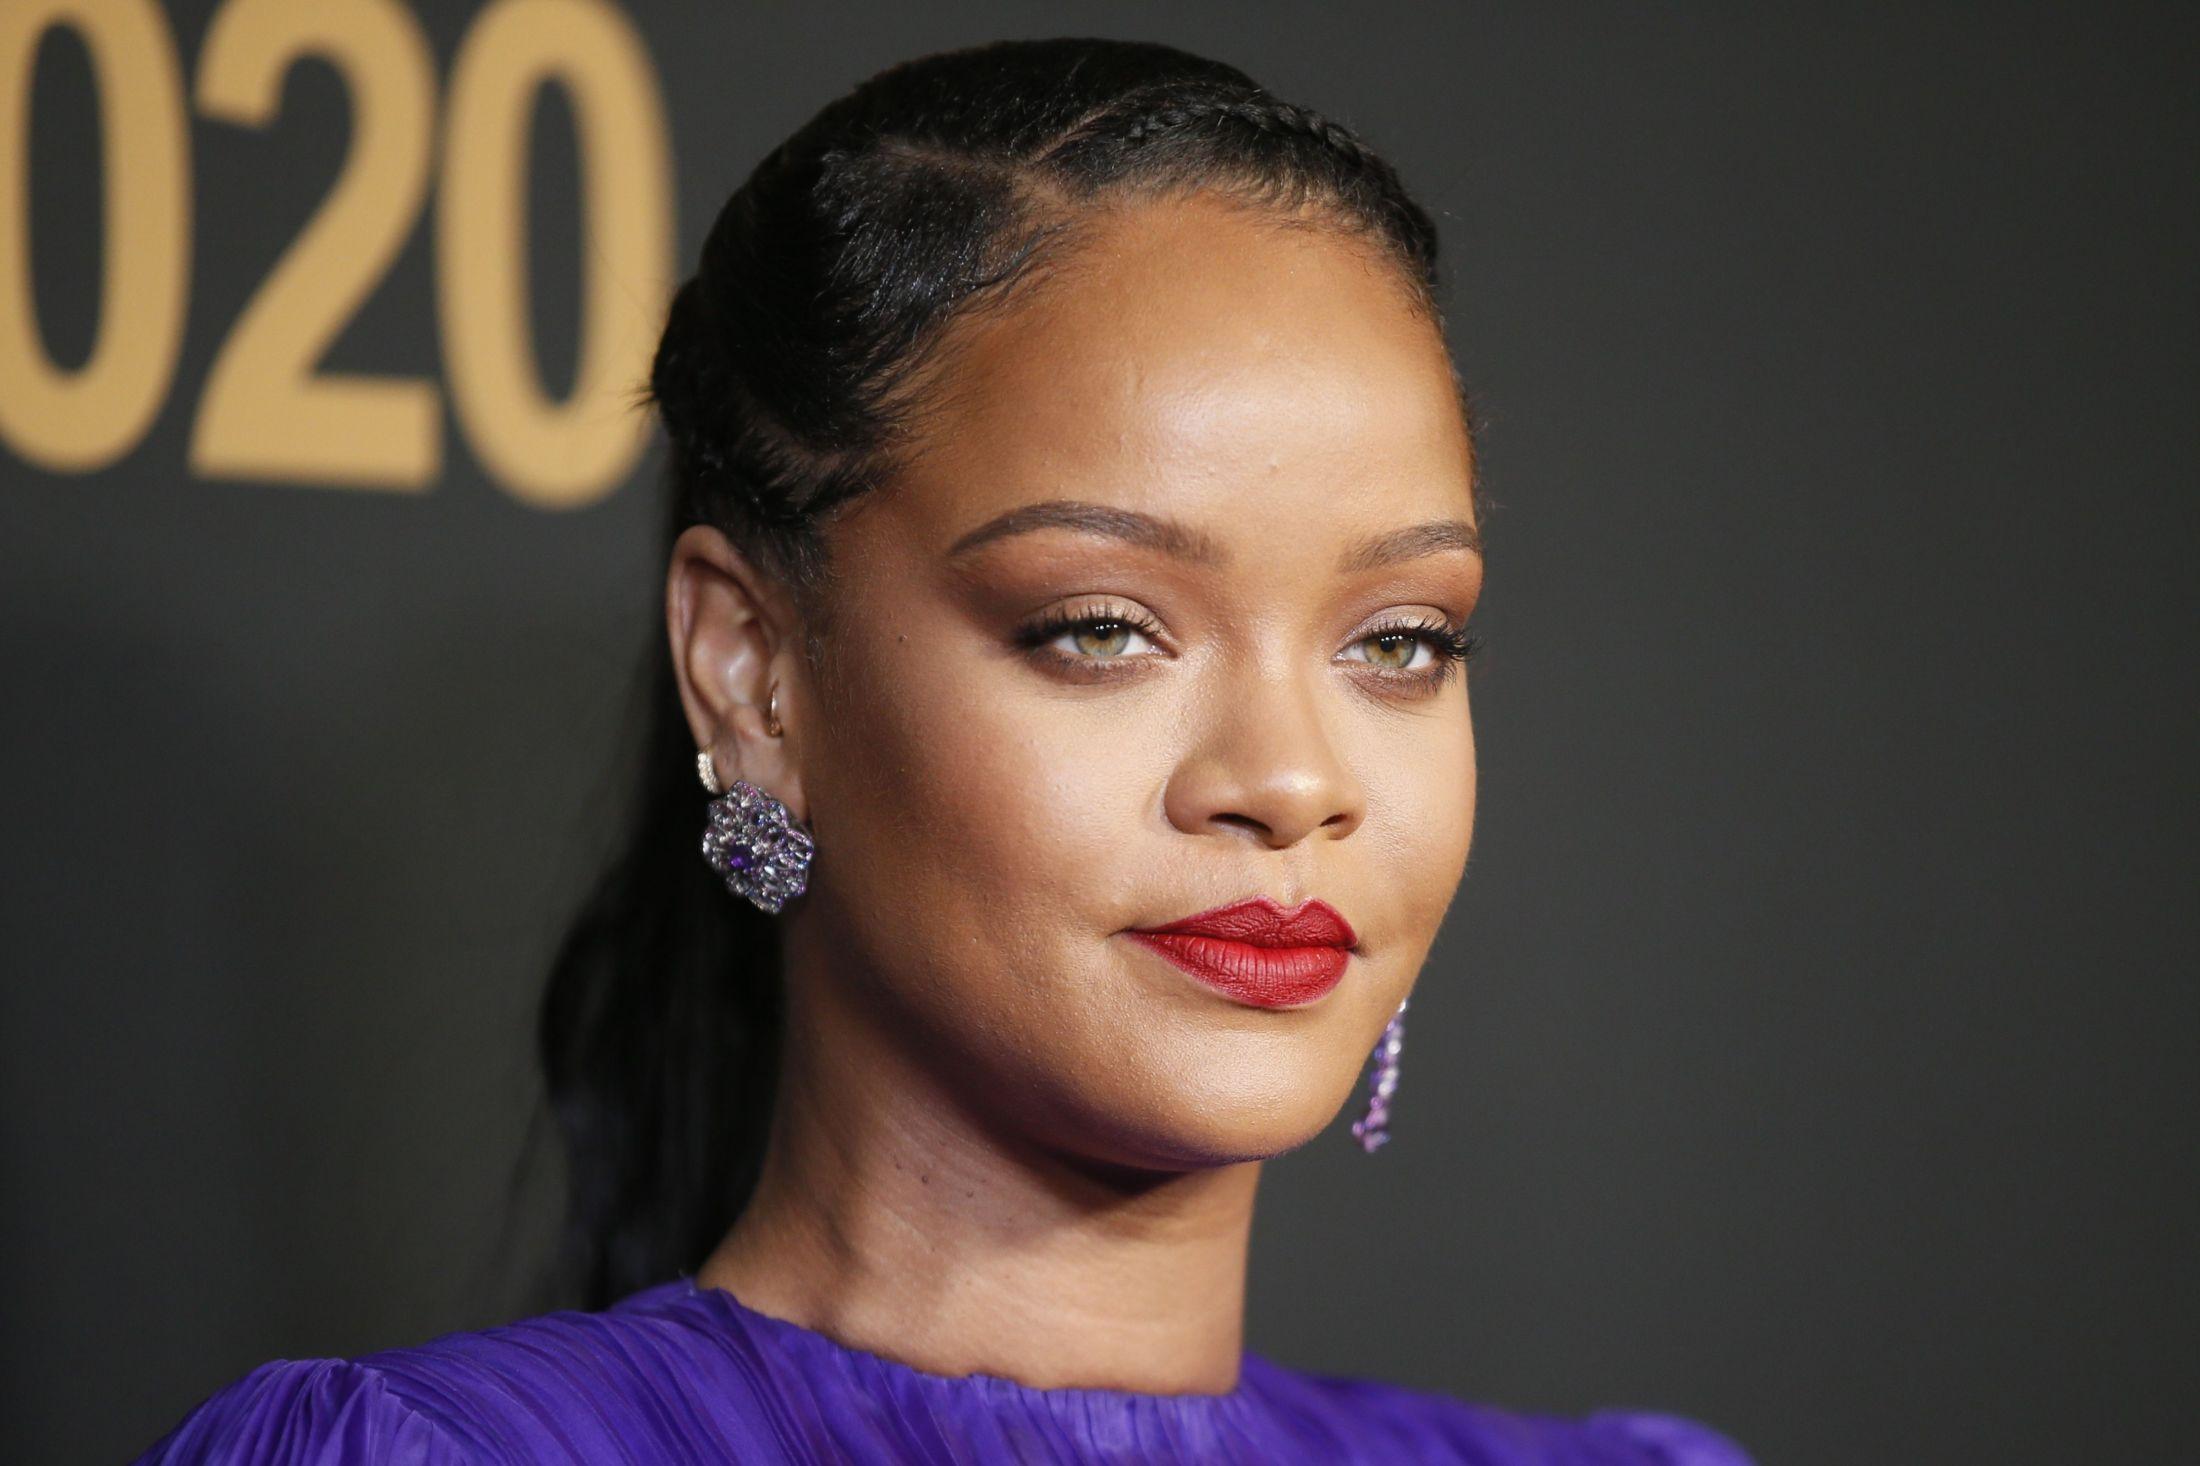 IKKE MER KLÆR: Designer og artist Rihanna skal ikke lenger satse på luksusklær sammen med luksusgruppen LVMH. Foto: Danny Moloshok/Reuters.